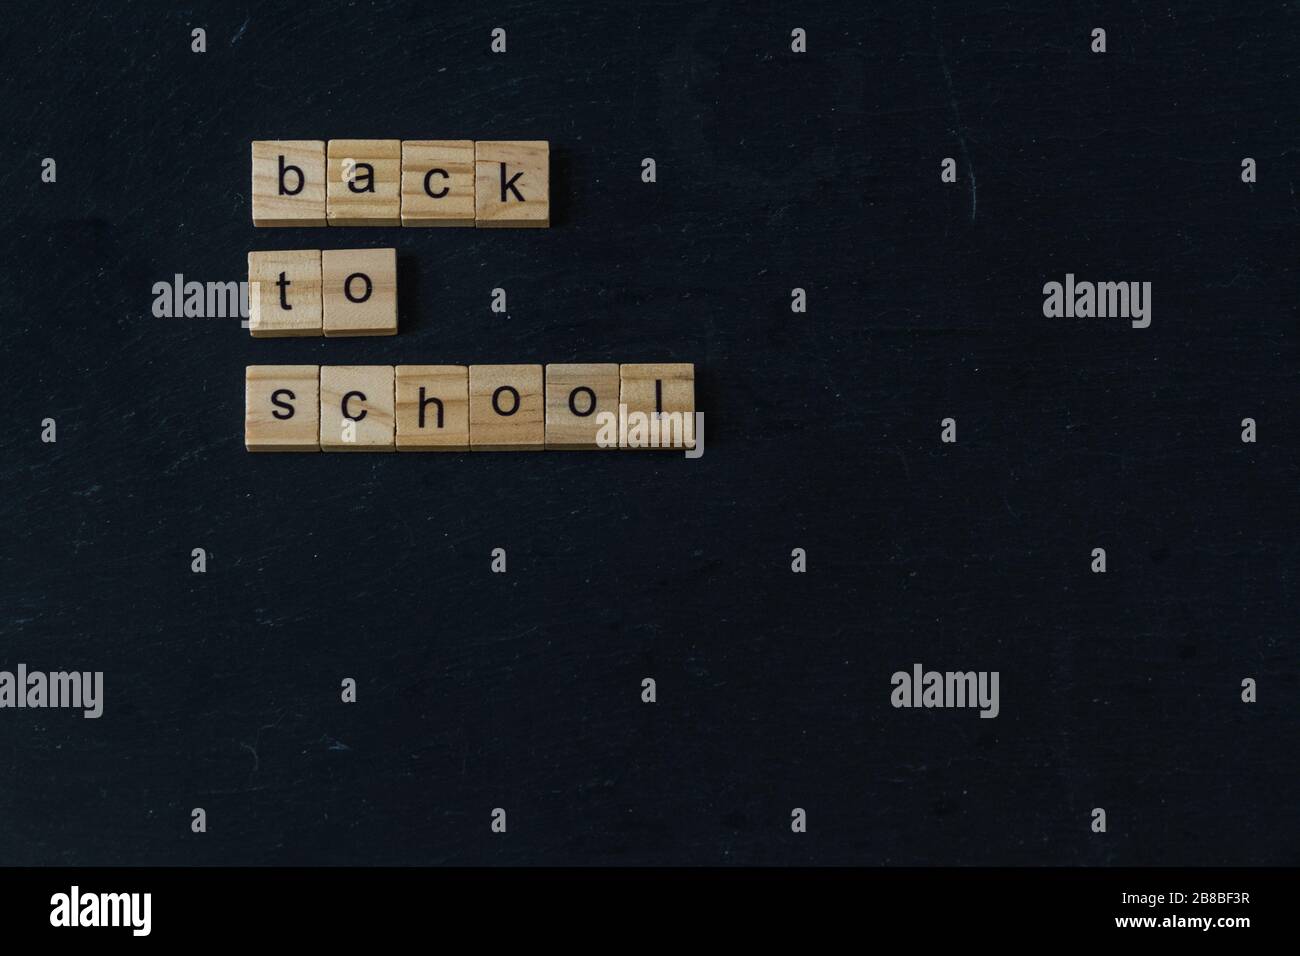 Volver a la Escuela escrito en bloques de madera de letras sobre fondo oscuro pizarra. CopySpace a continuación. Foto de stock